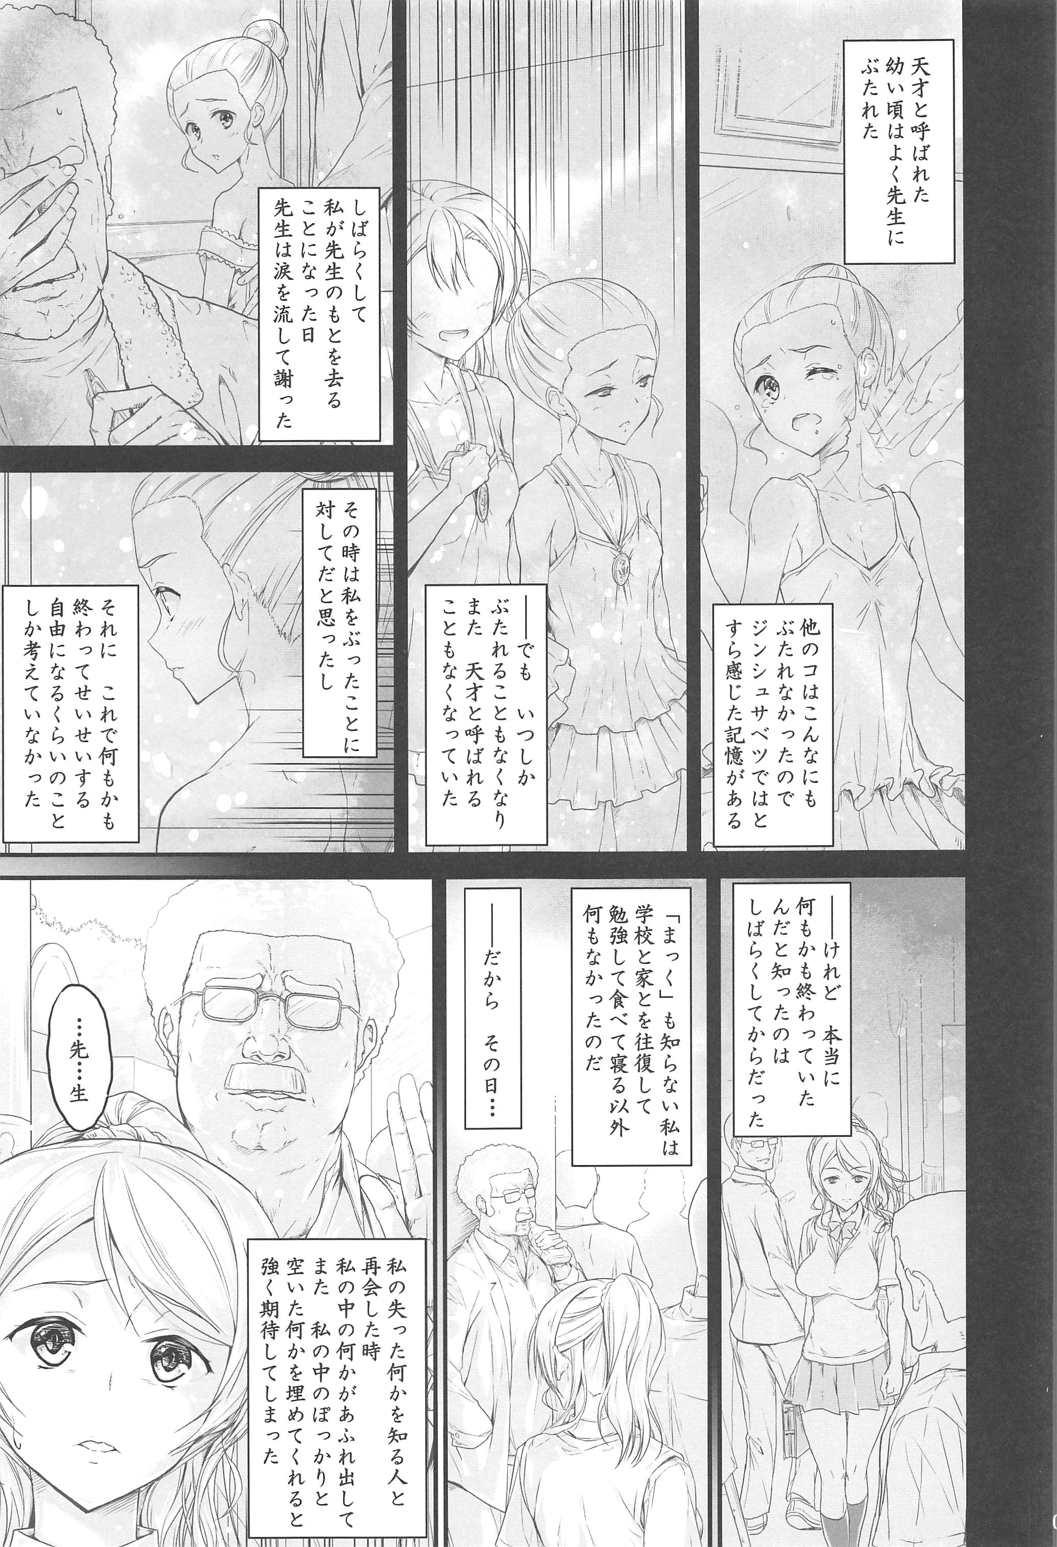 Milk Kouhensachi no Yuutousei de Jiki Seito Kaichou Saiyuuryoku Kouho no Ninen Erichika - Love live Kissing - Page 3